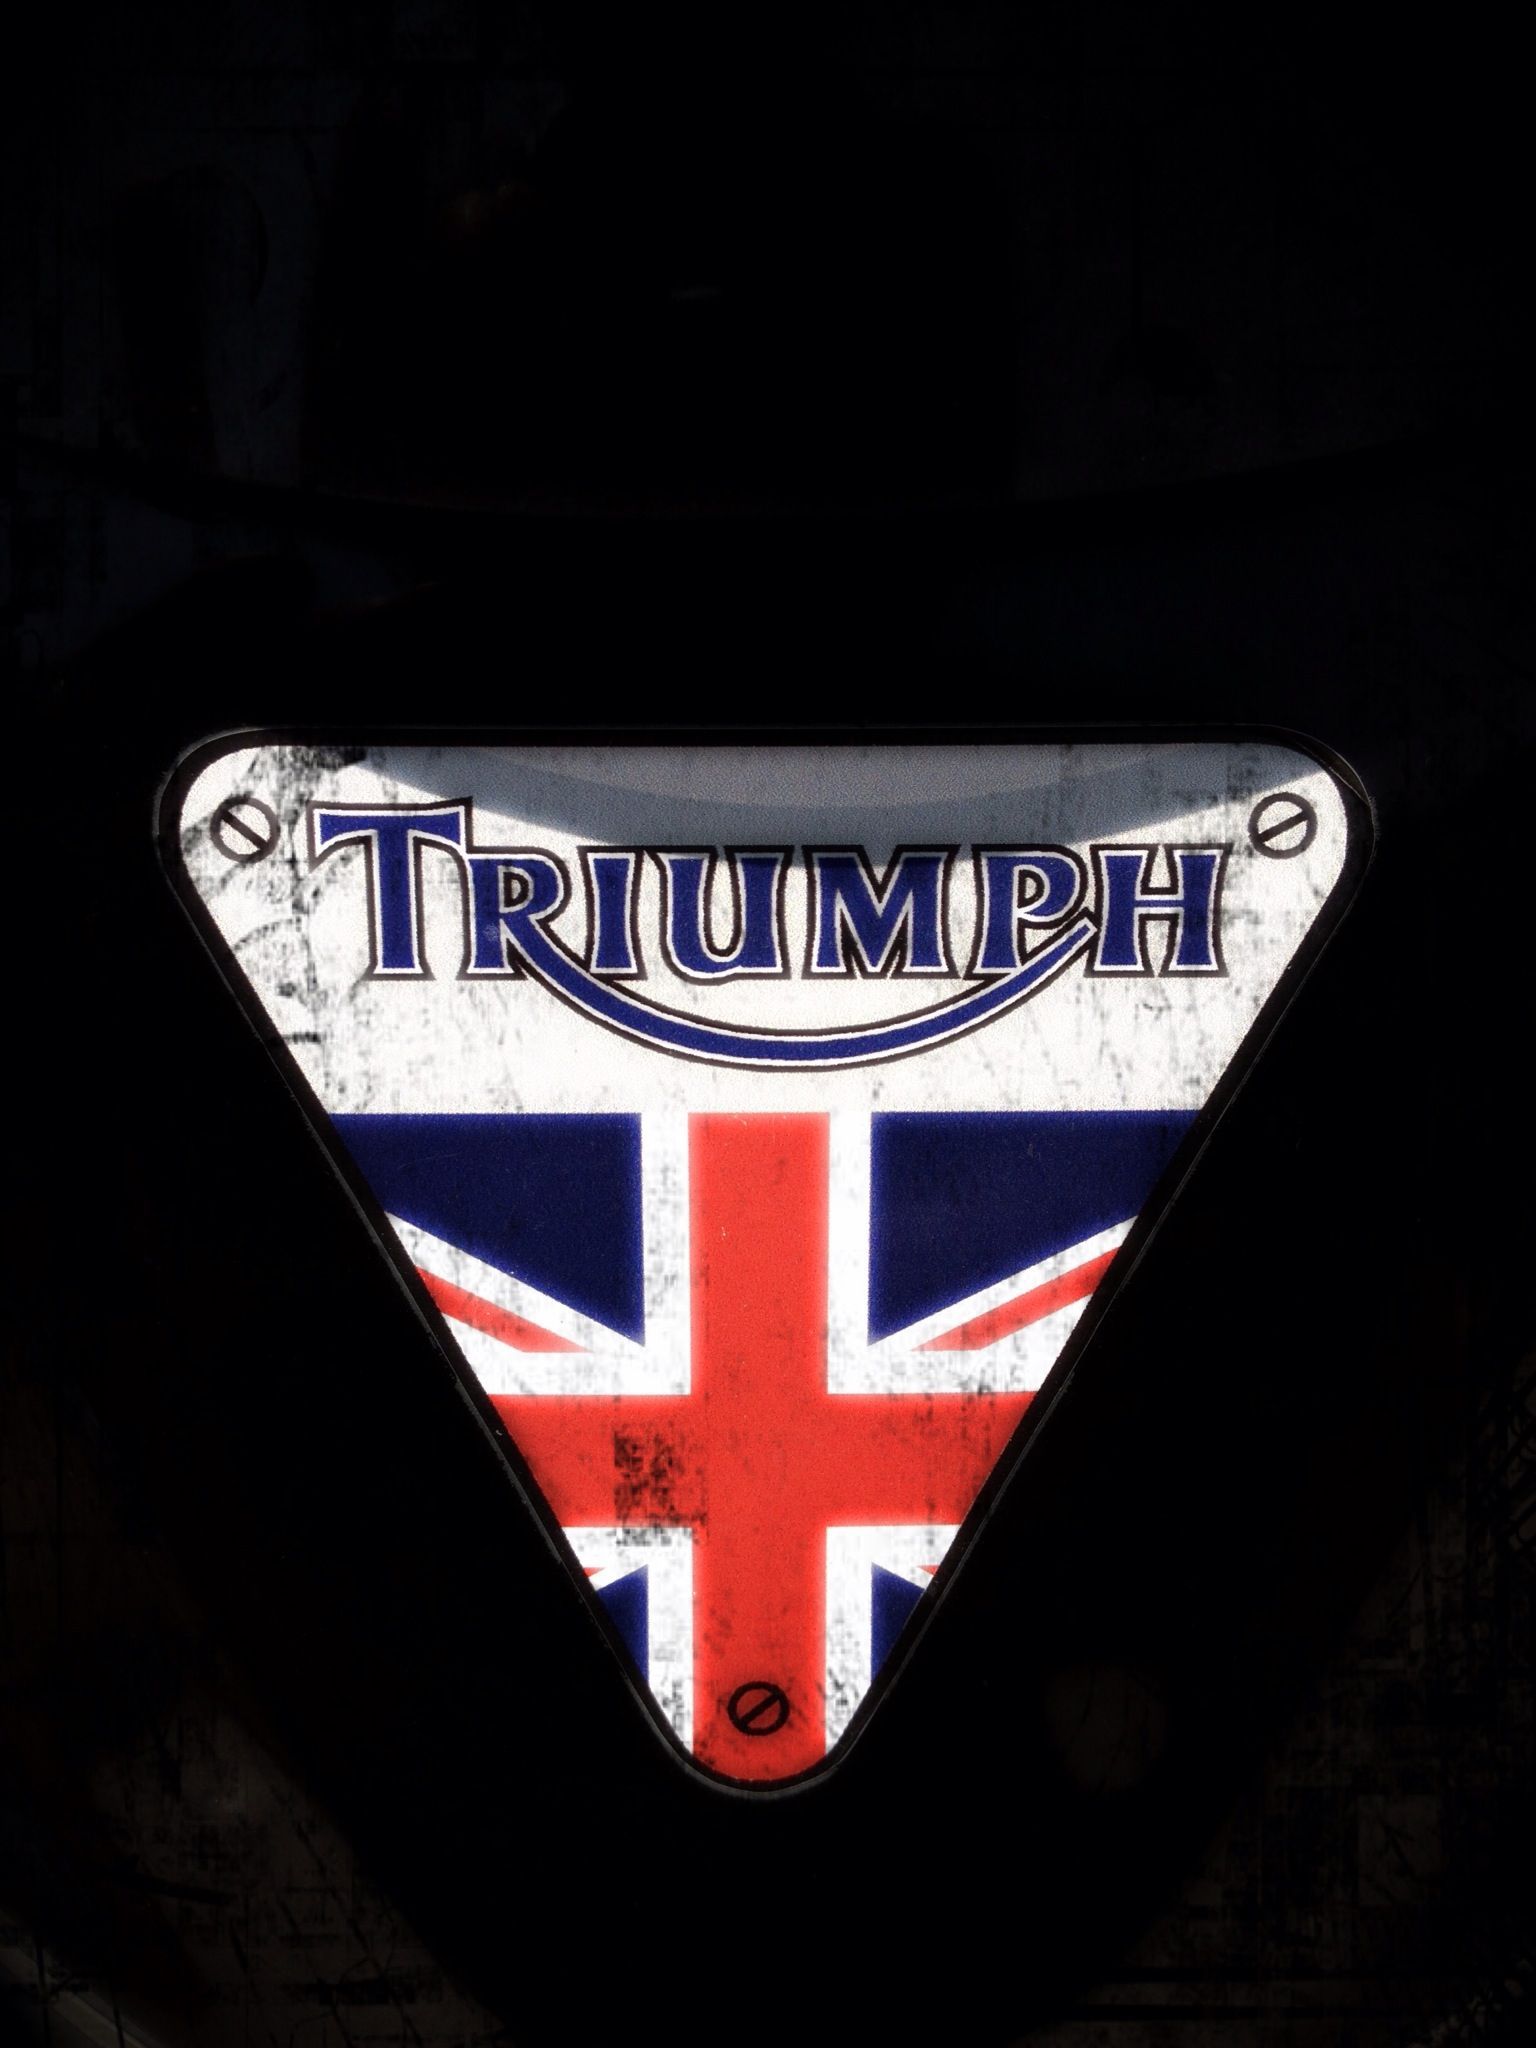 Triumph logo. Triumph logo, Triumph motorbikes, Triumph bikes